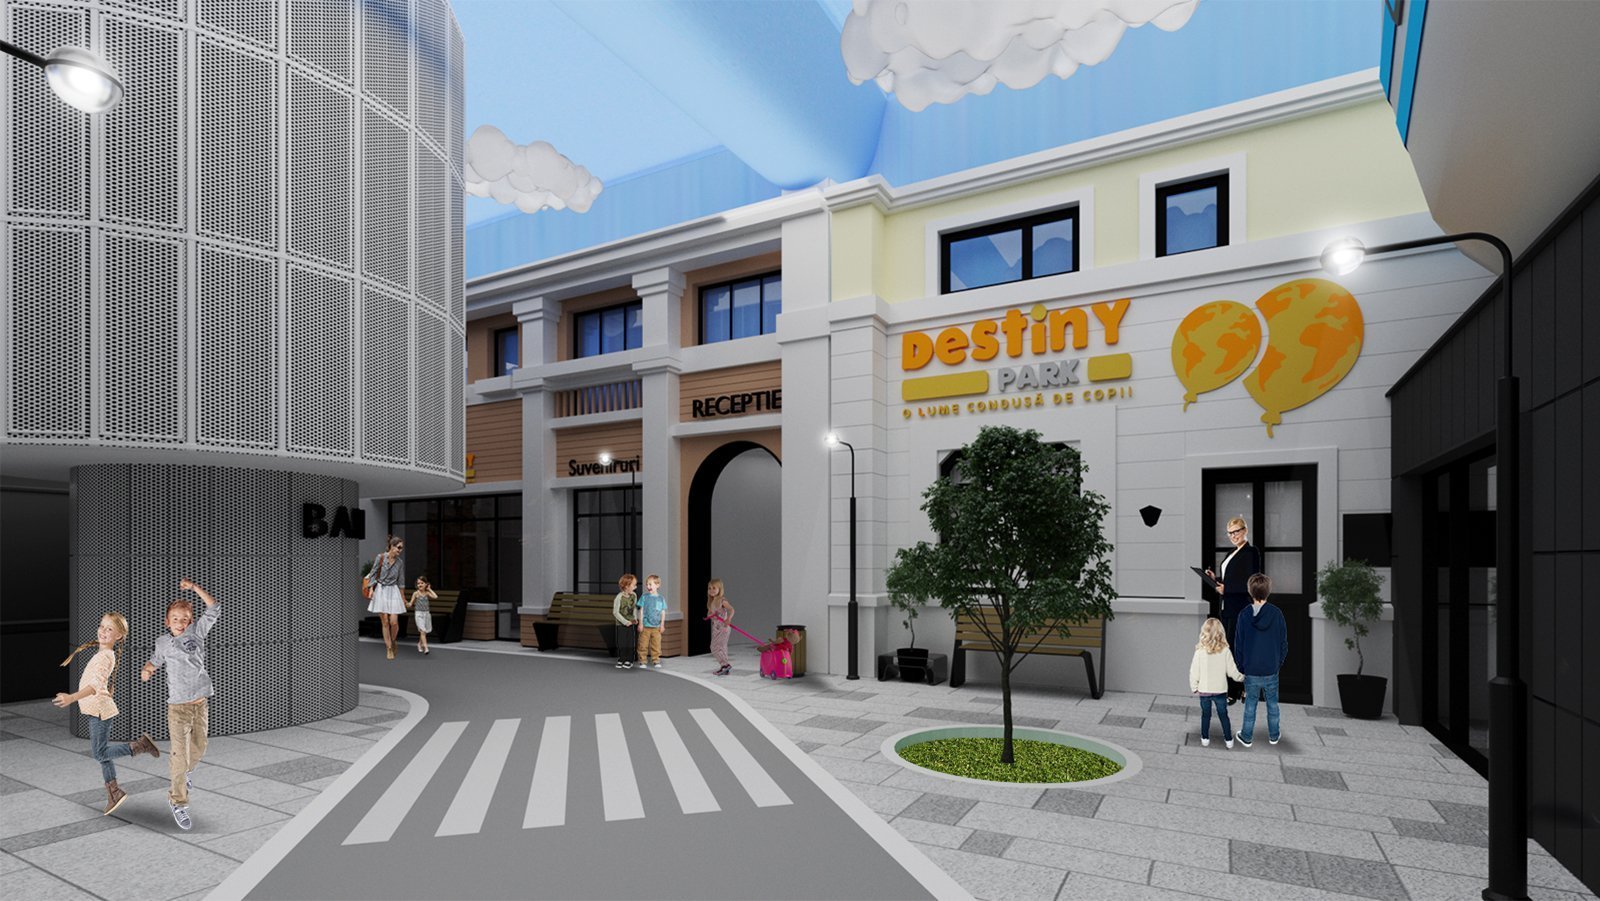 Cel mai mare parc de edutainment din Europa de Est, Destiny Park, se va deschide în septembrie lângă Băneasa Shopping Mall